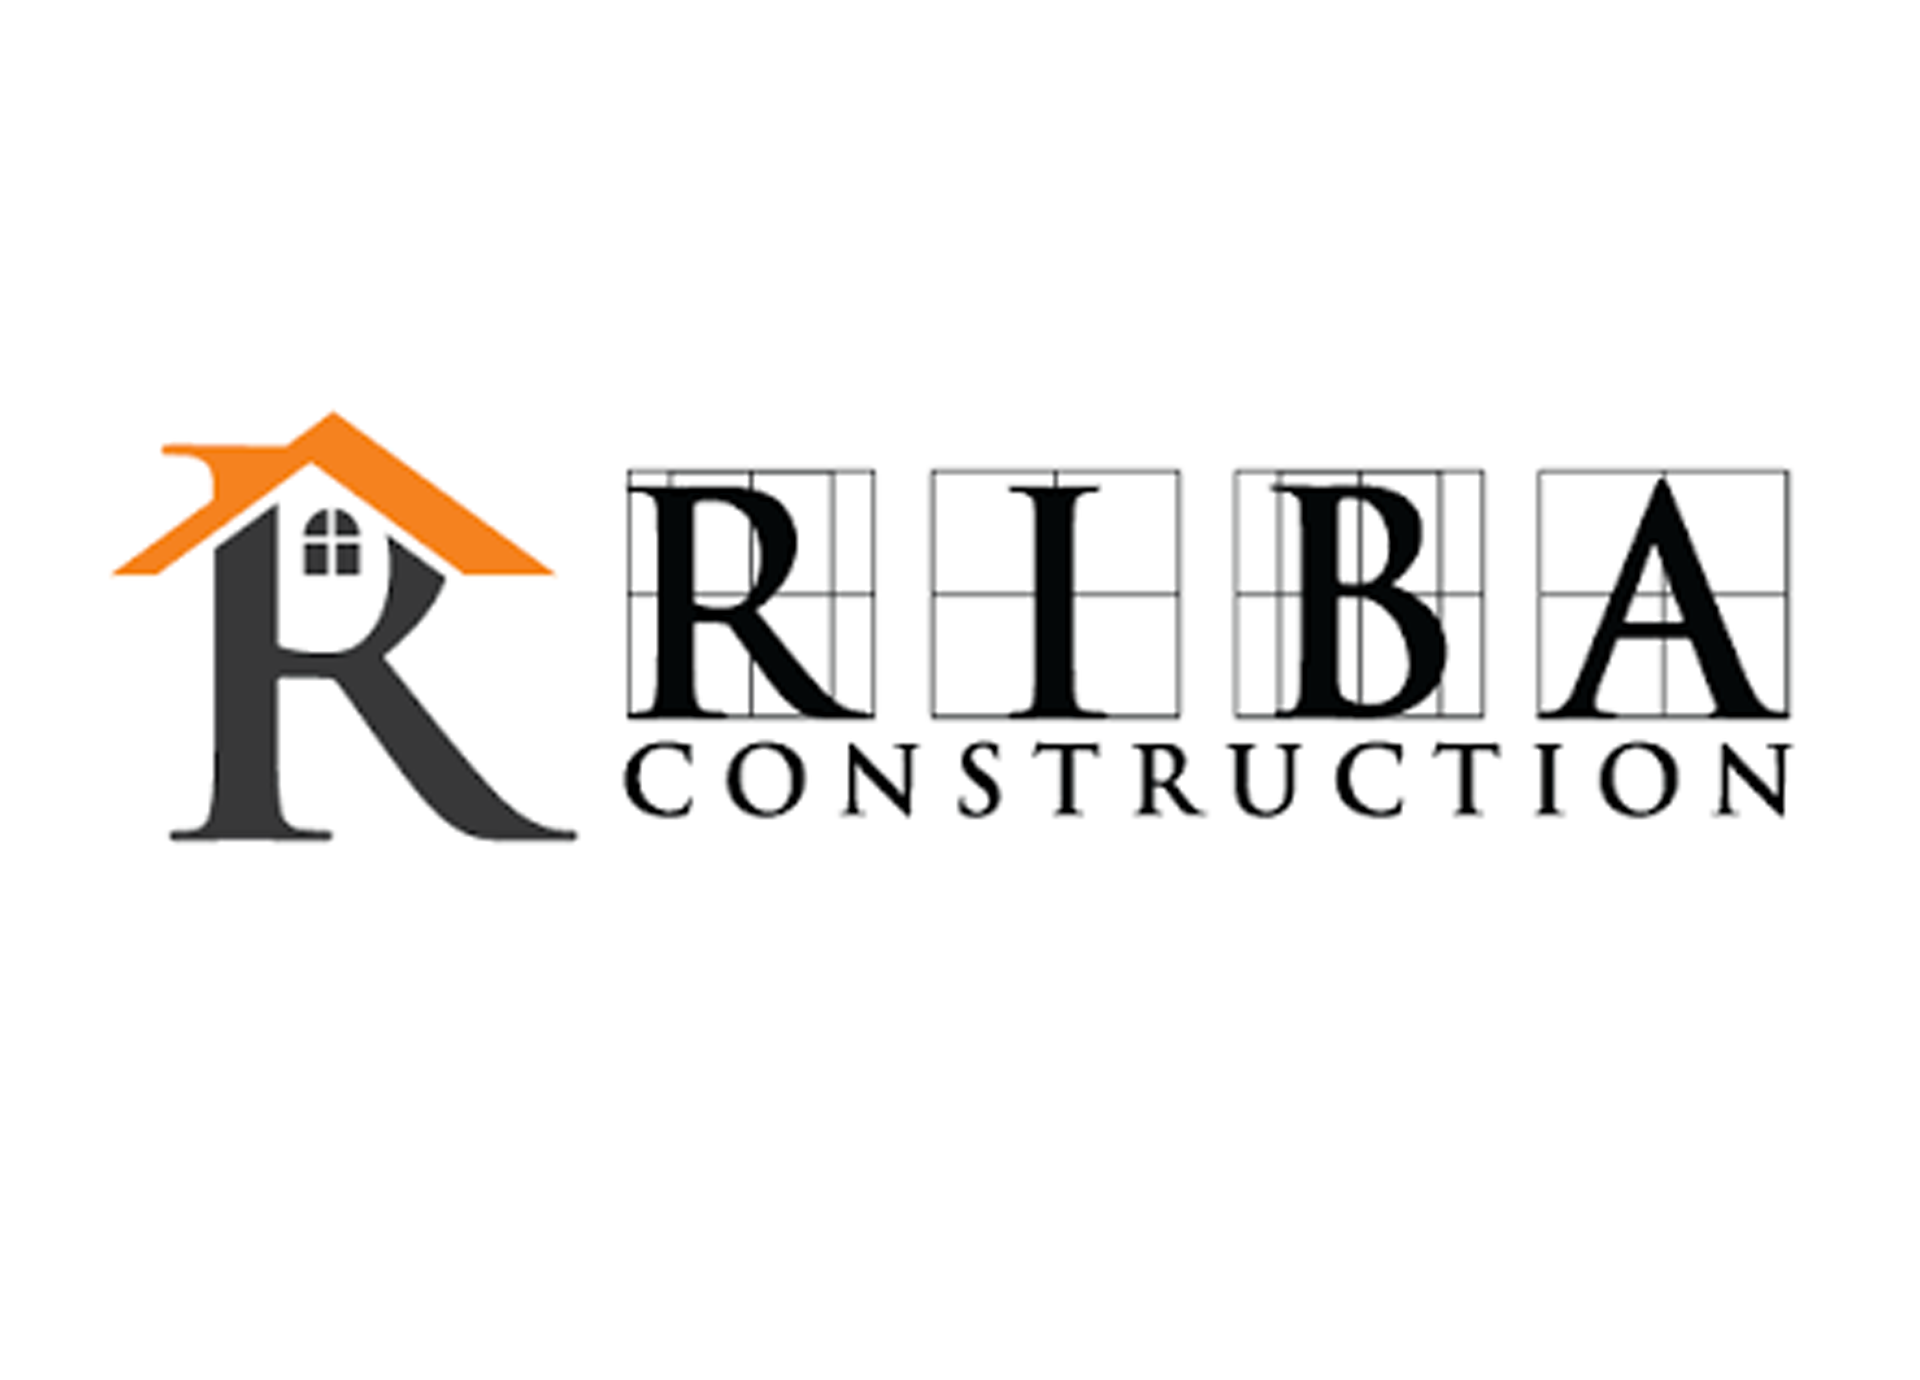 RIBA Construction